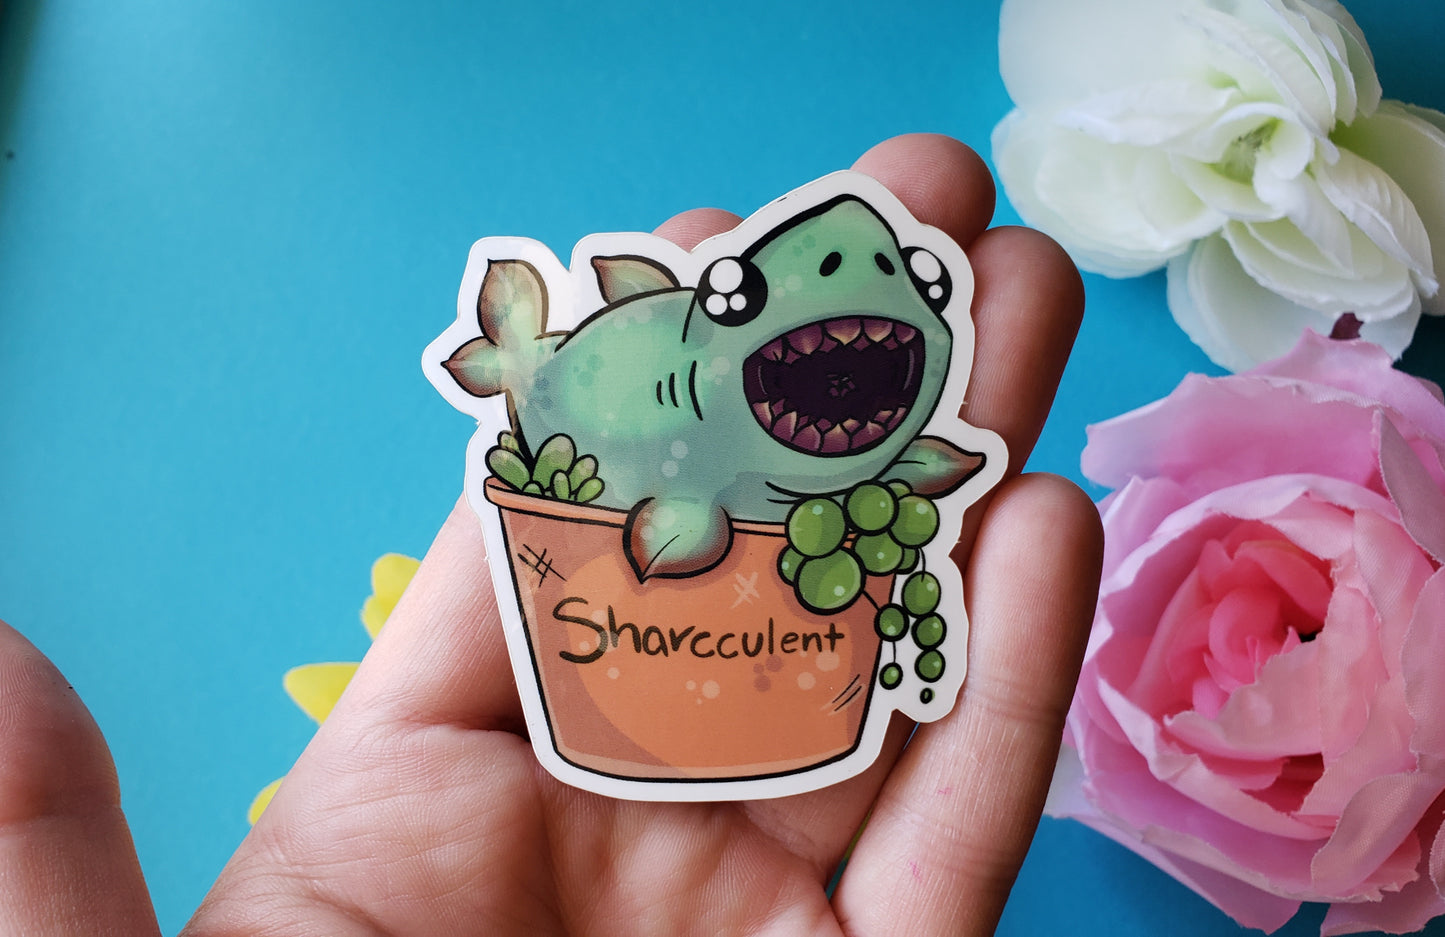 Sharcculent Sticker (shark + succulent)